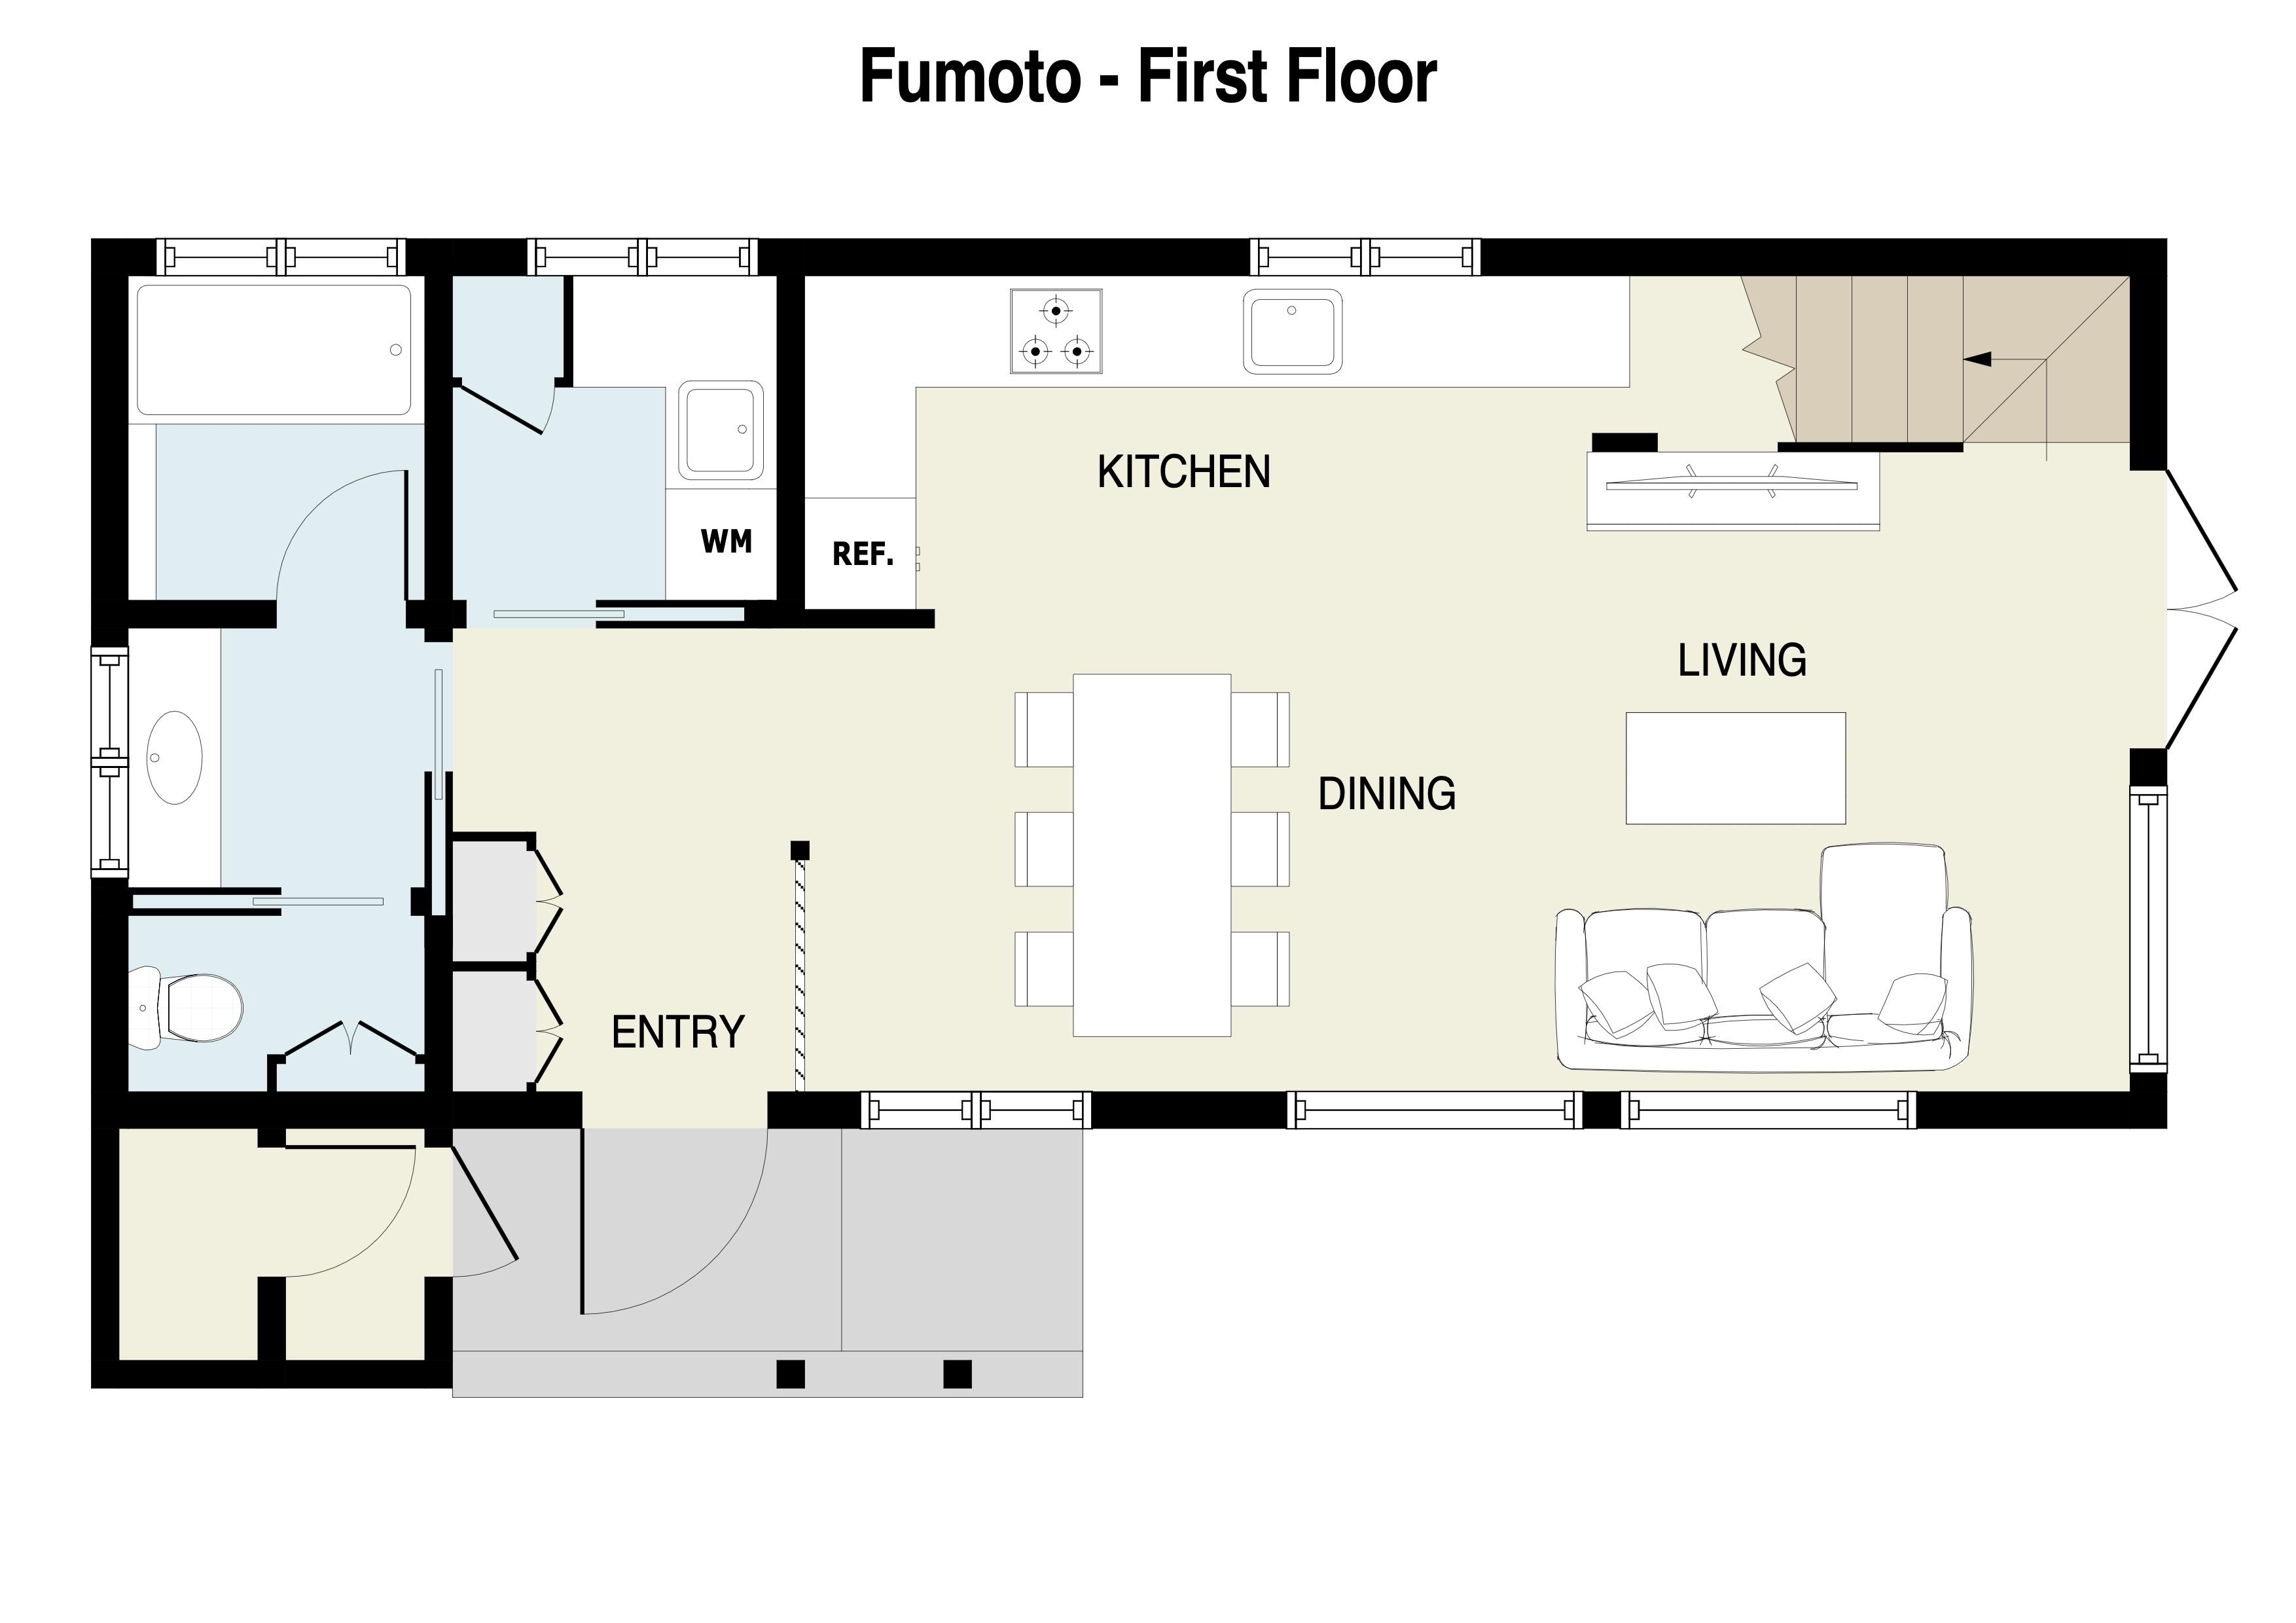 Fumoto 1st Floor plan